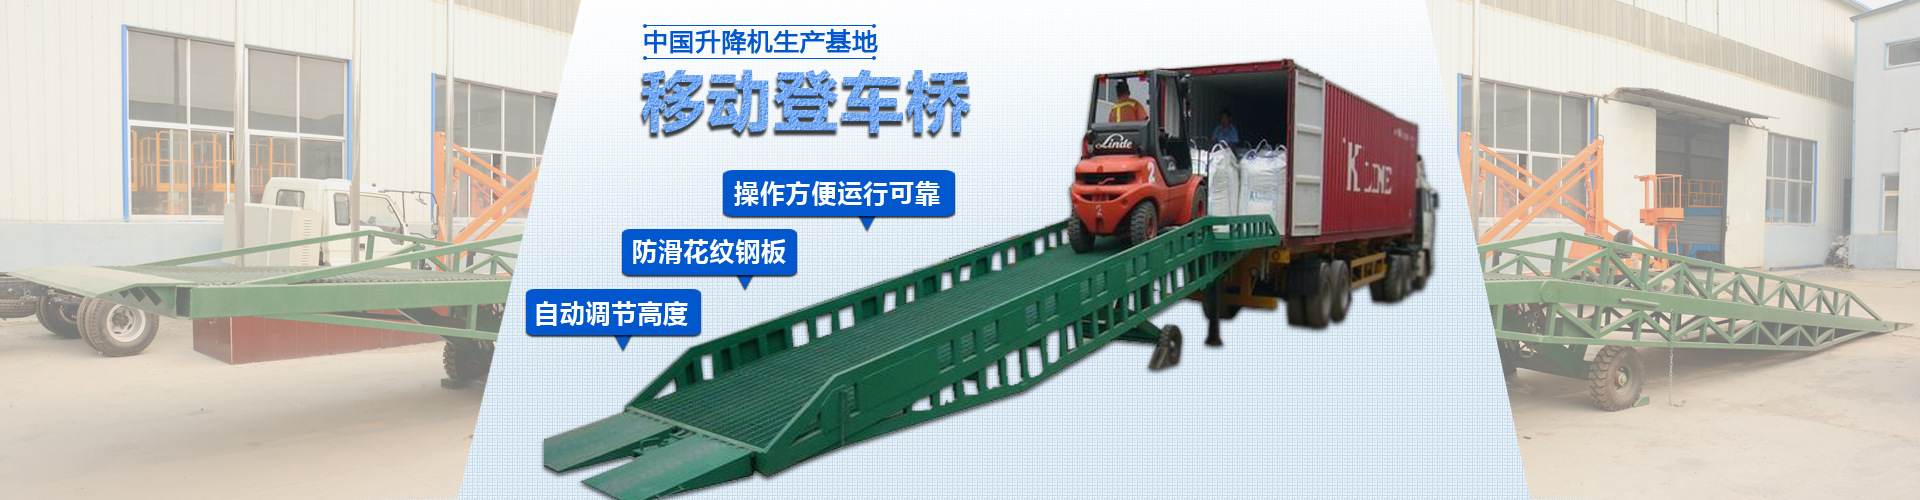 山东厂家直销 8吨移动式登车桥 月牙桥 液压斜坡桥 叉车专用平台示例图1